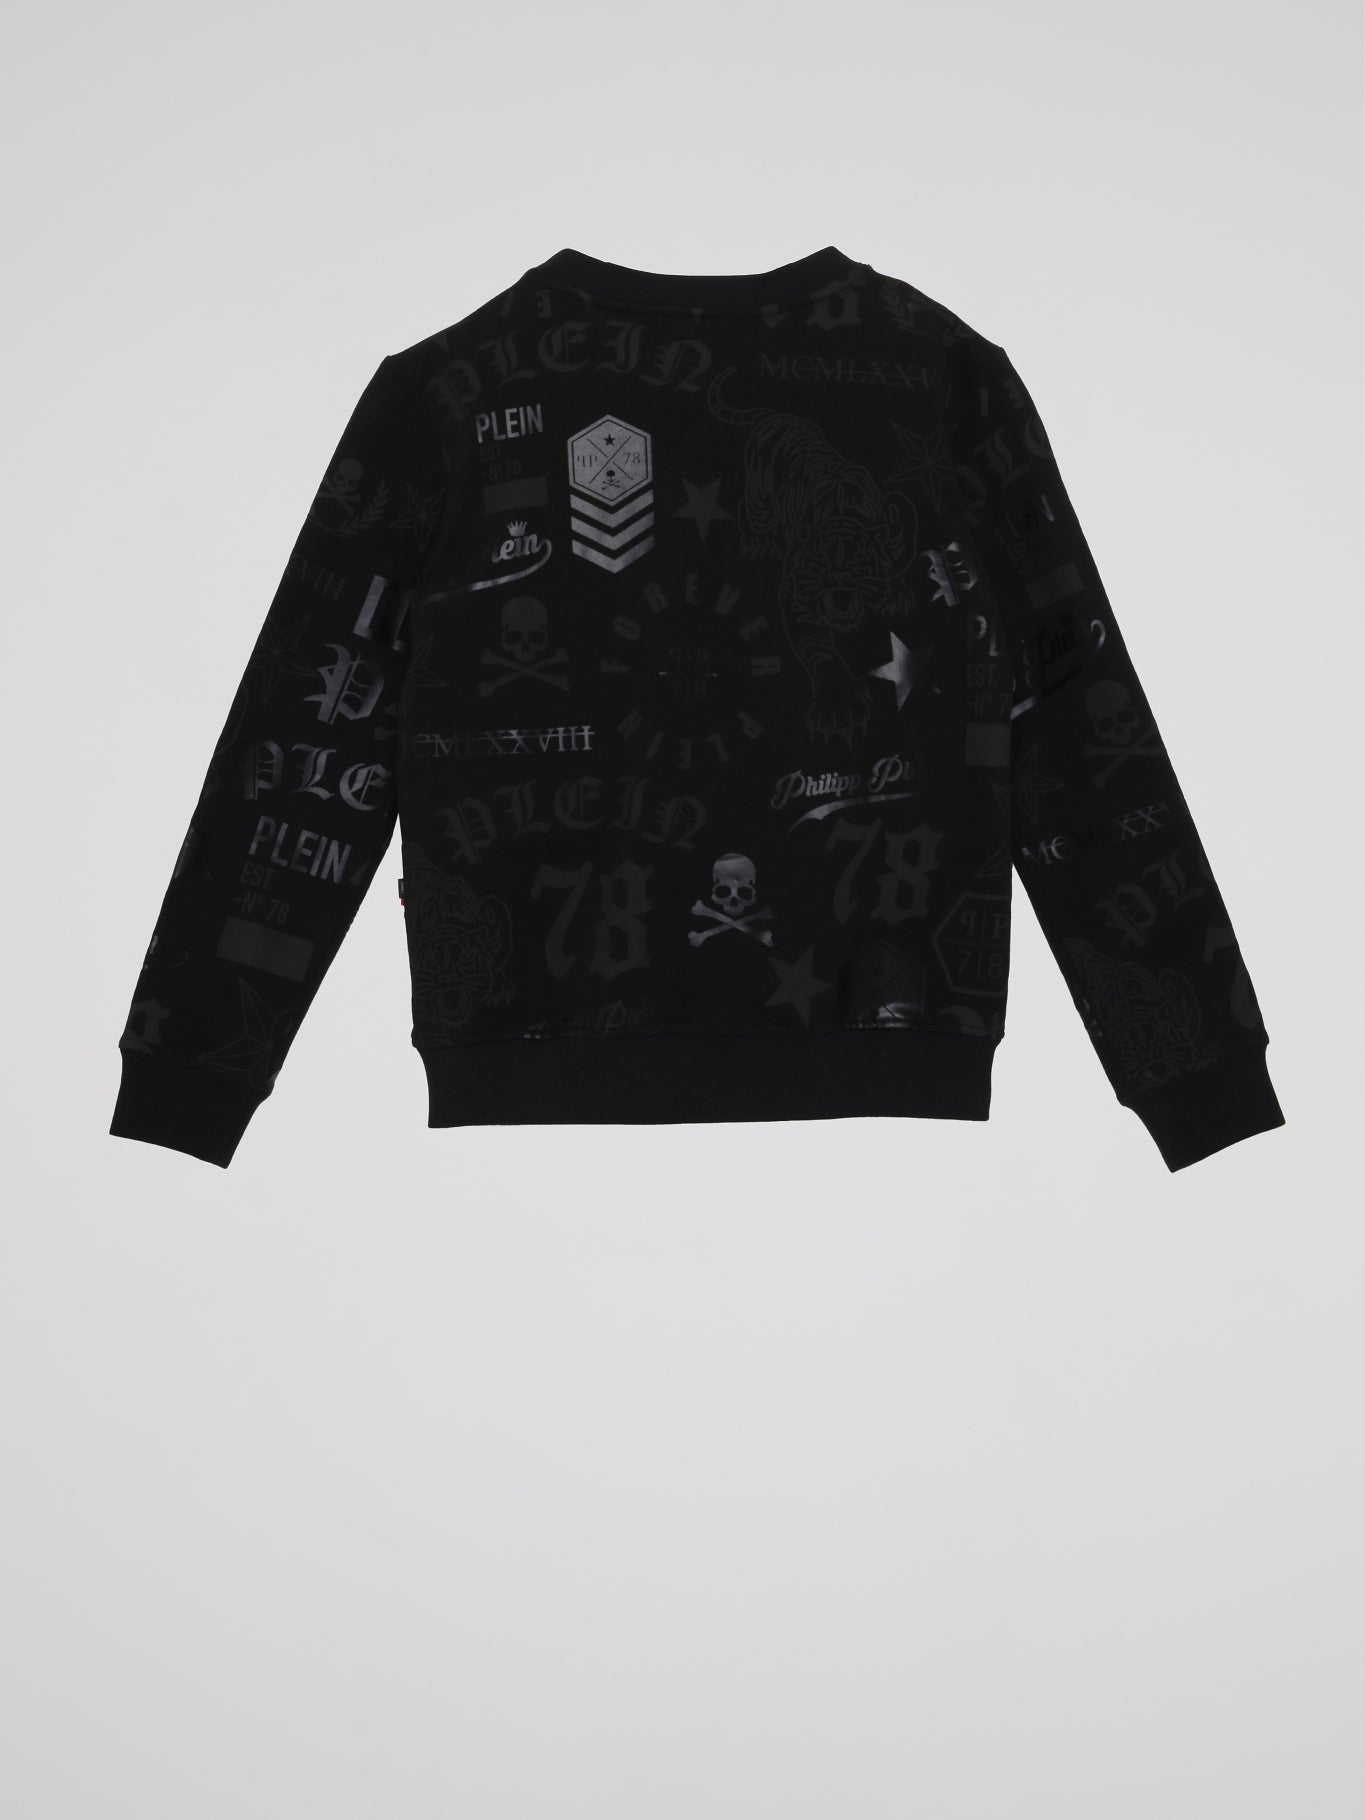 Black Printed Sweatshirt (Kids)